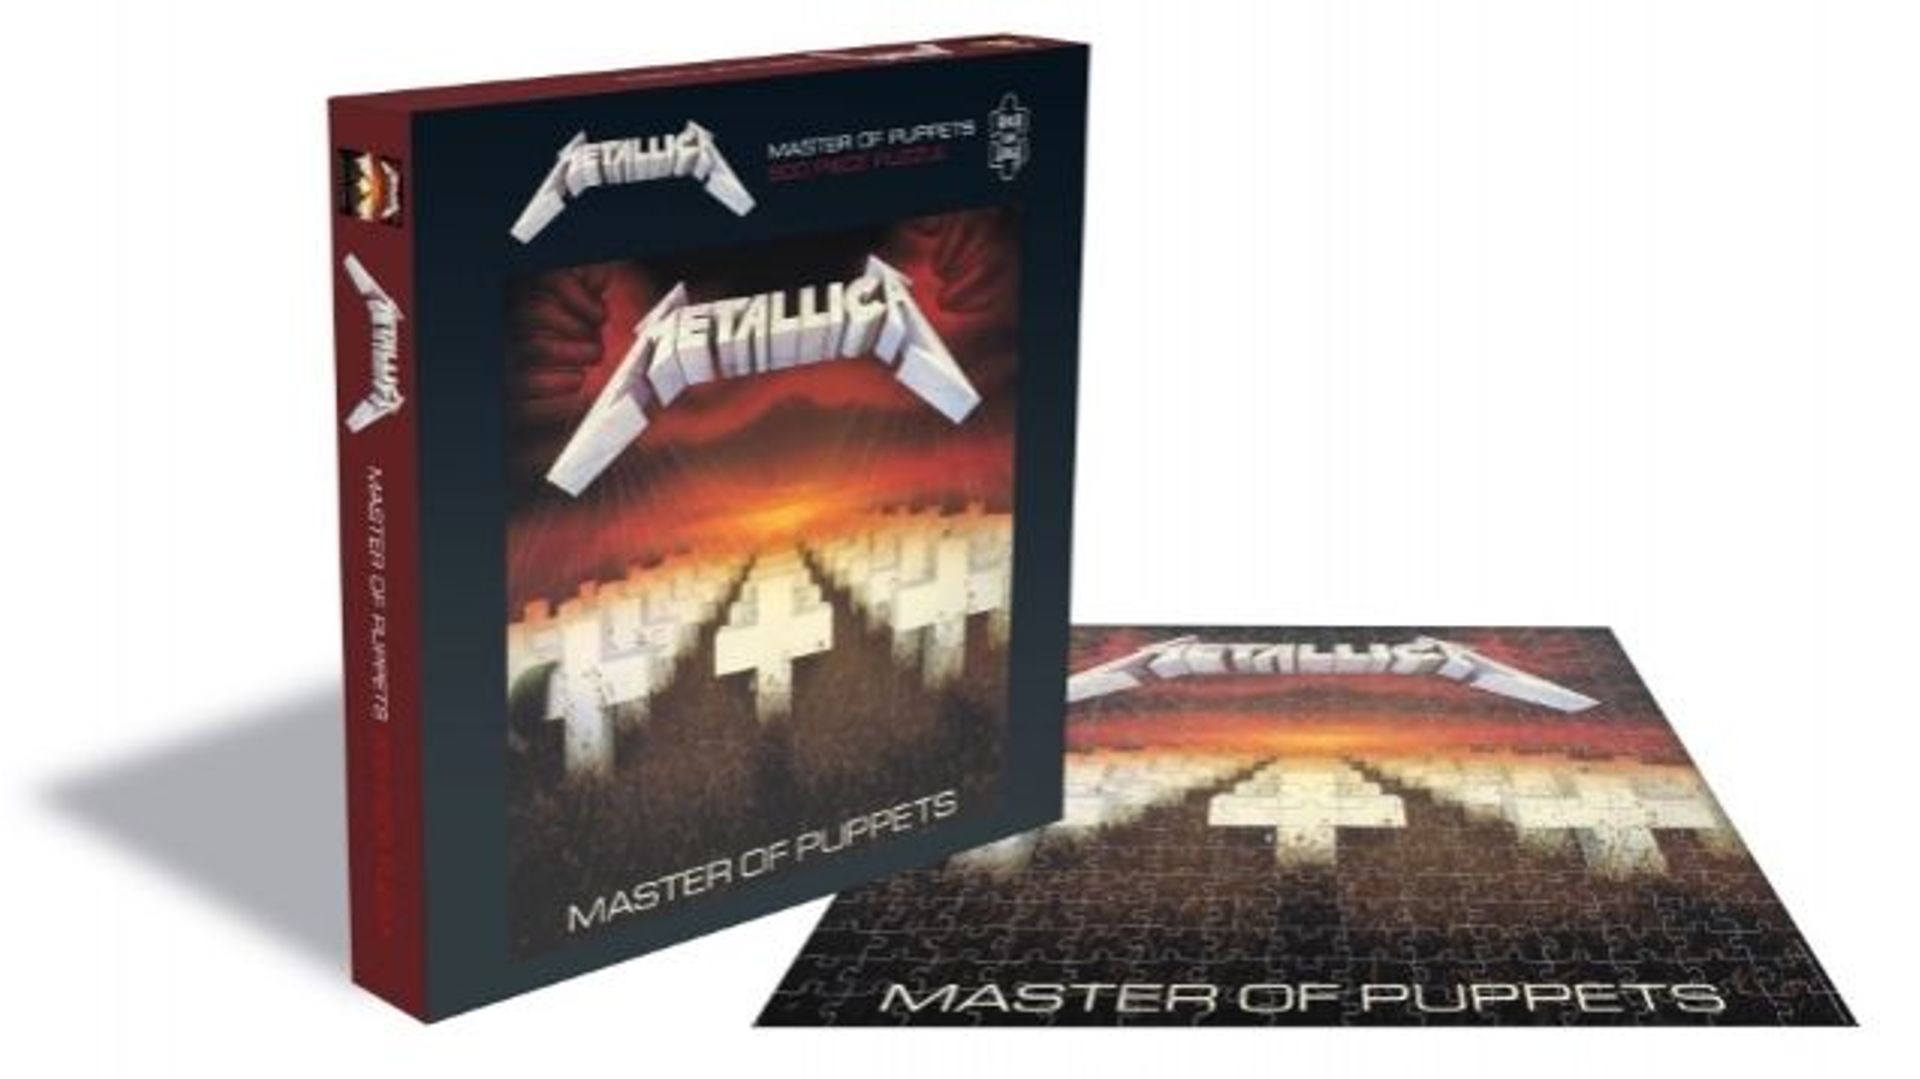 Des puzzles Metallica arrivent